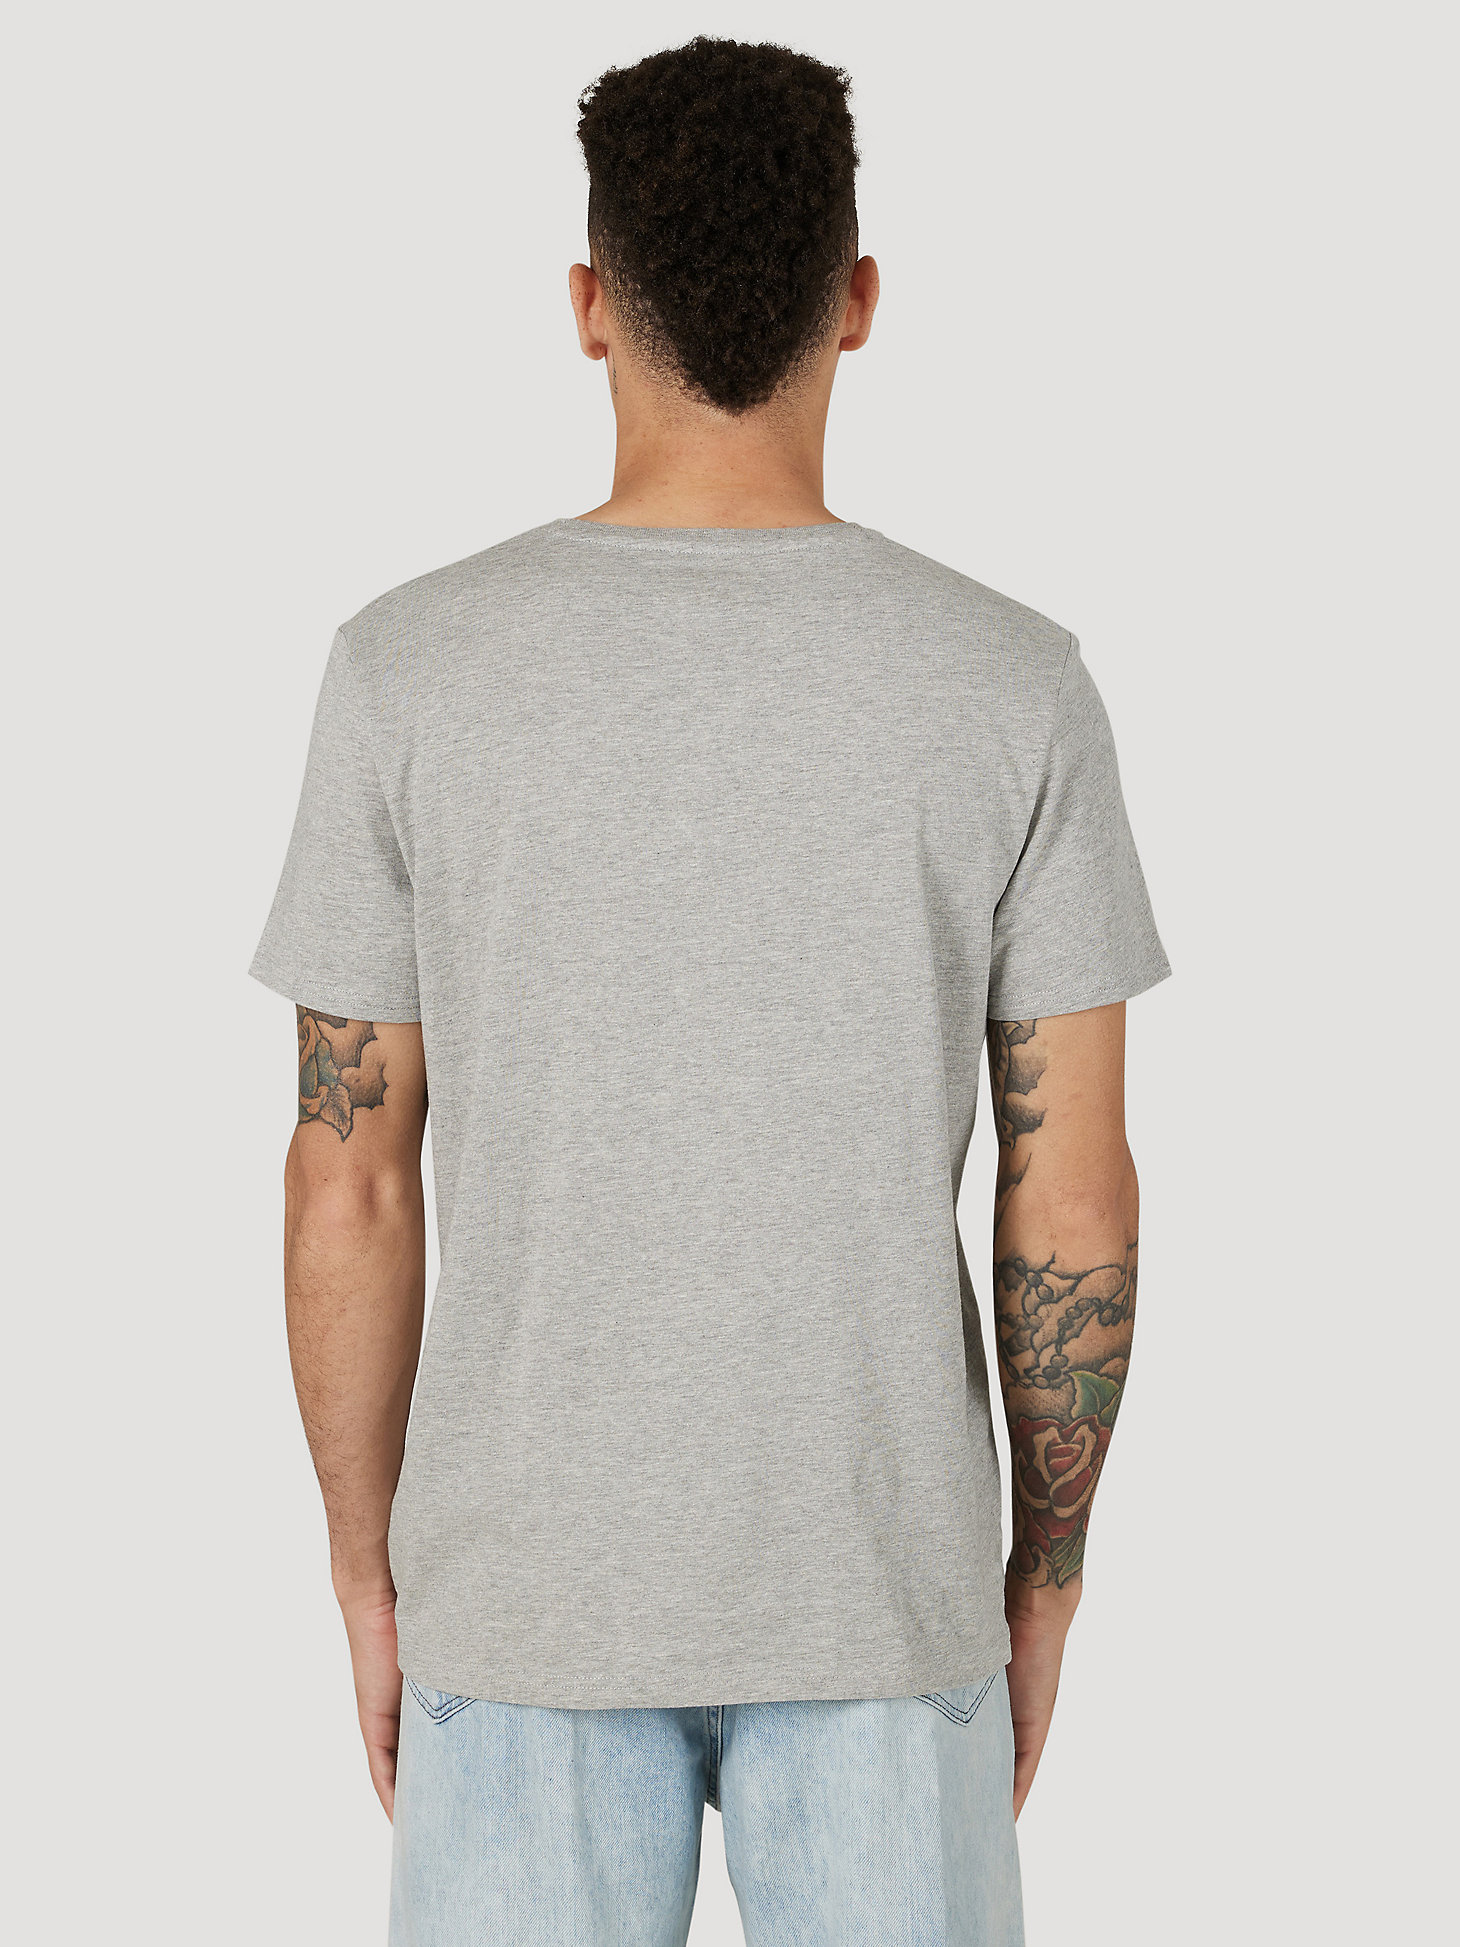 Men's Wrangler Sunrise T-Shirt in Grey alternative view 1